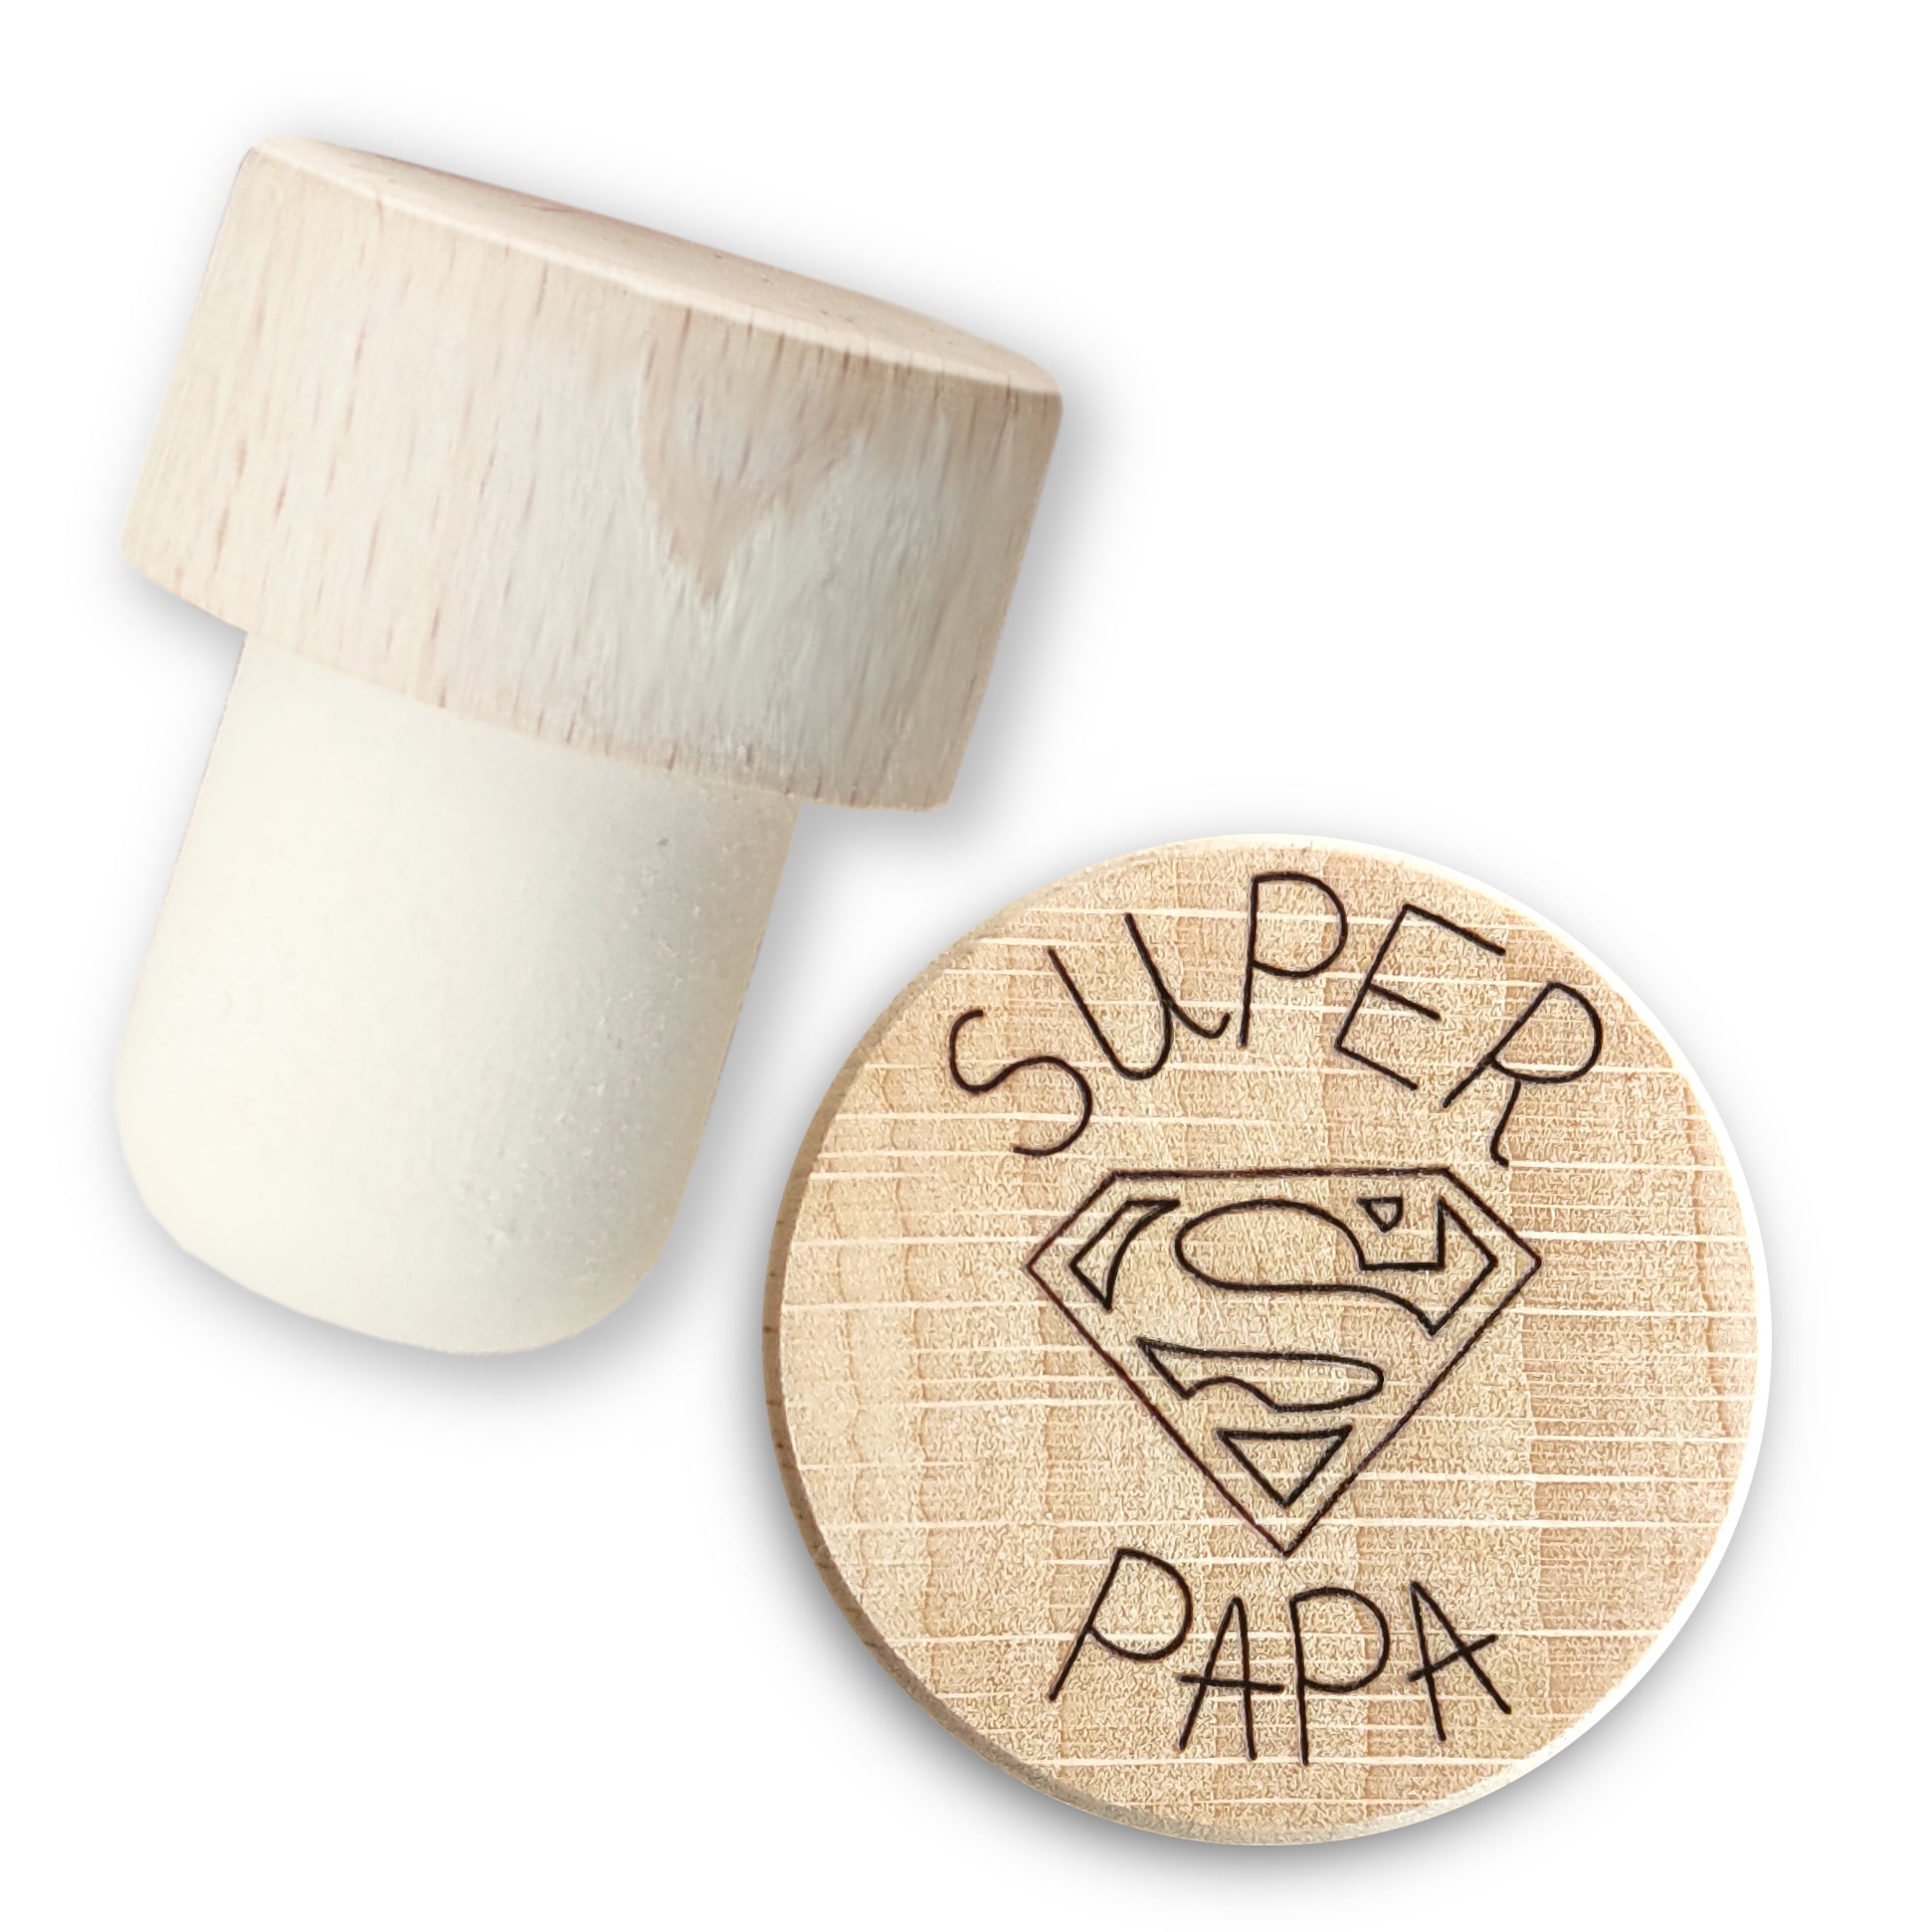 Porte-clés Super papy depuis personnalisé médaille bois gravée